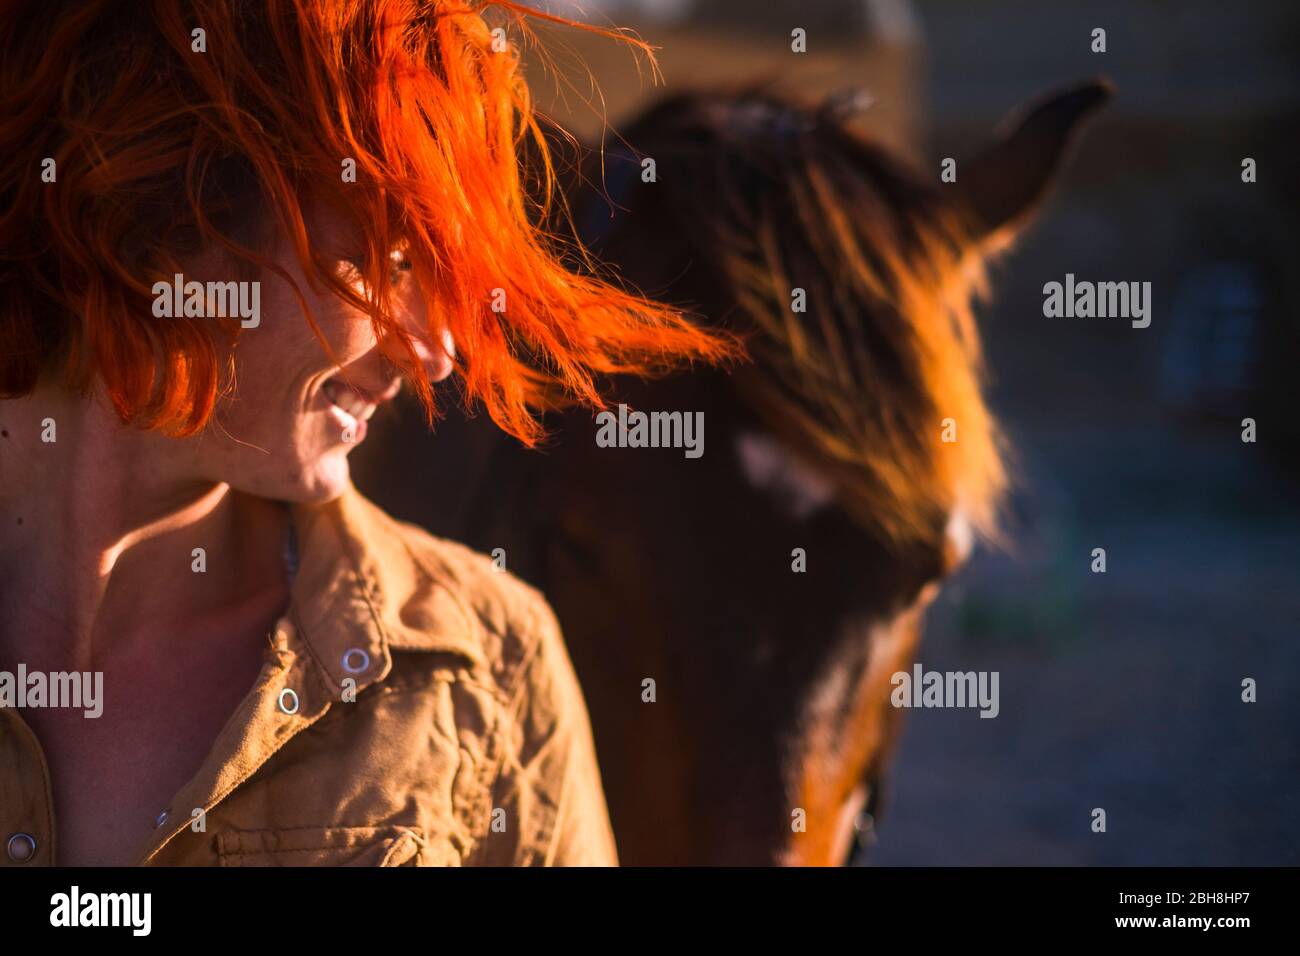 capelli rossi bello stile di vita giovane donna con il cavallo migliore amico in campagna. ritratto di paople e animali per la vita animale domestico concetto all'aperto sotto il sole Foto Stock